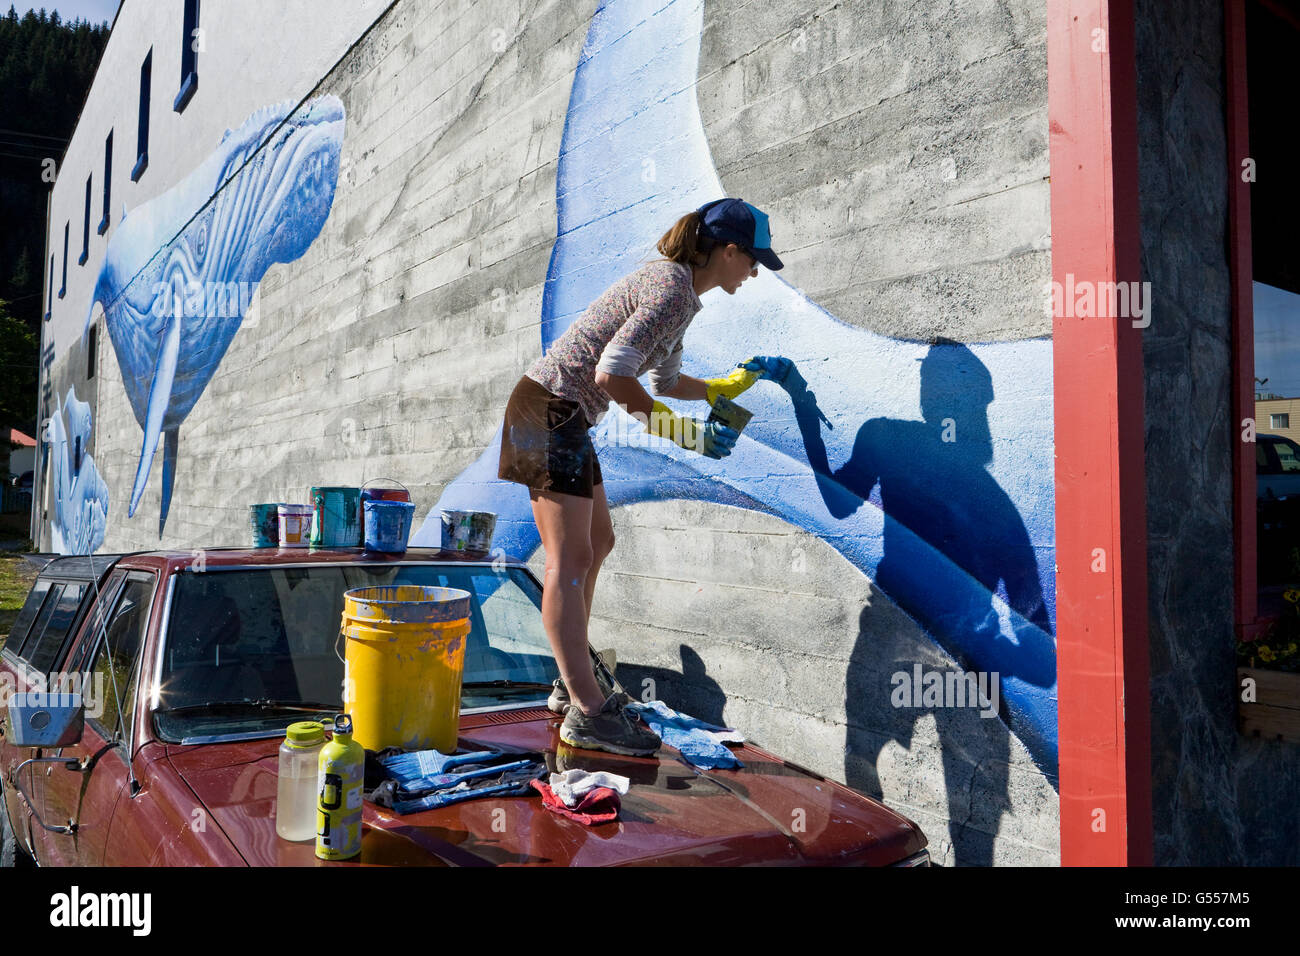 Künstlerin Justine Pechuzal ihr Wandbild "Meer-Ward gebundene" Darstellung Buckelwale (Impressionen Novaeangliae) an eine Wand malen Stockfoto